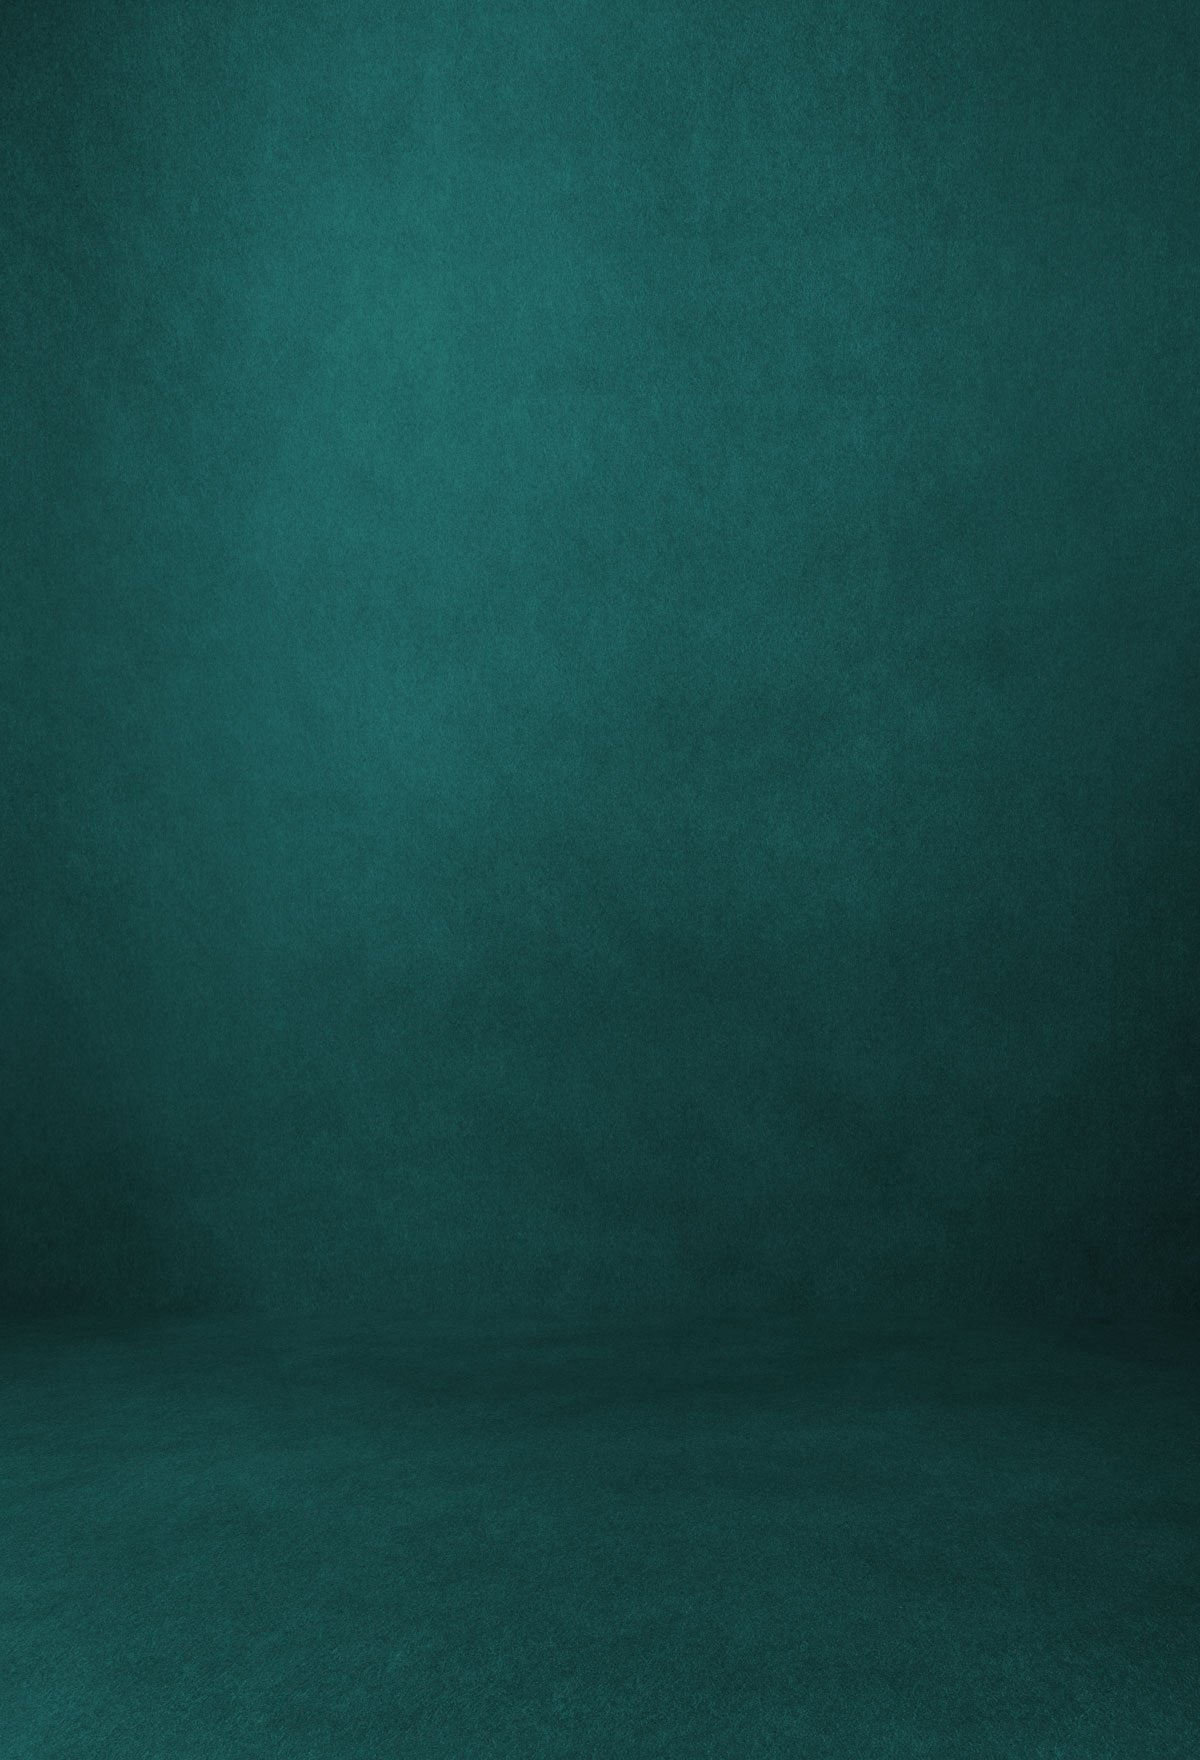 Kate Turquoise Texture Hintergrund für die Fotografie